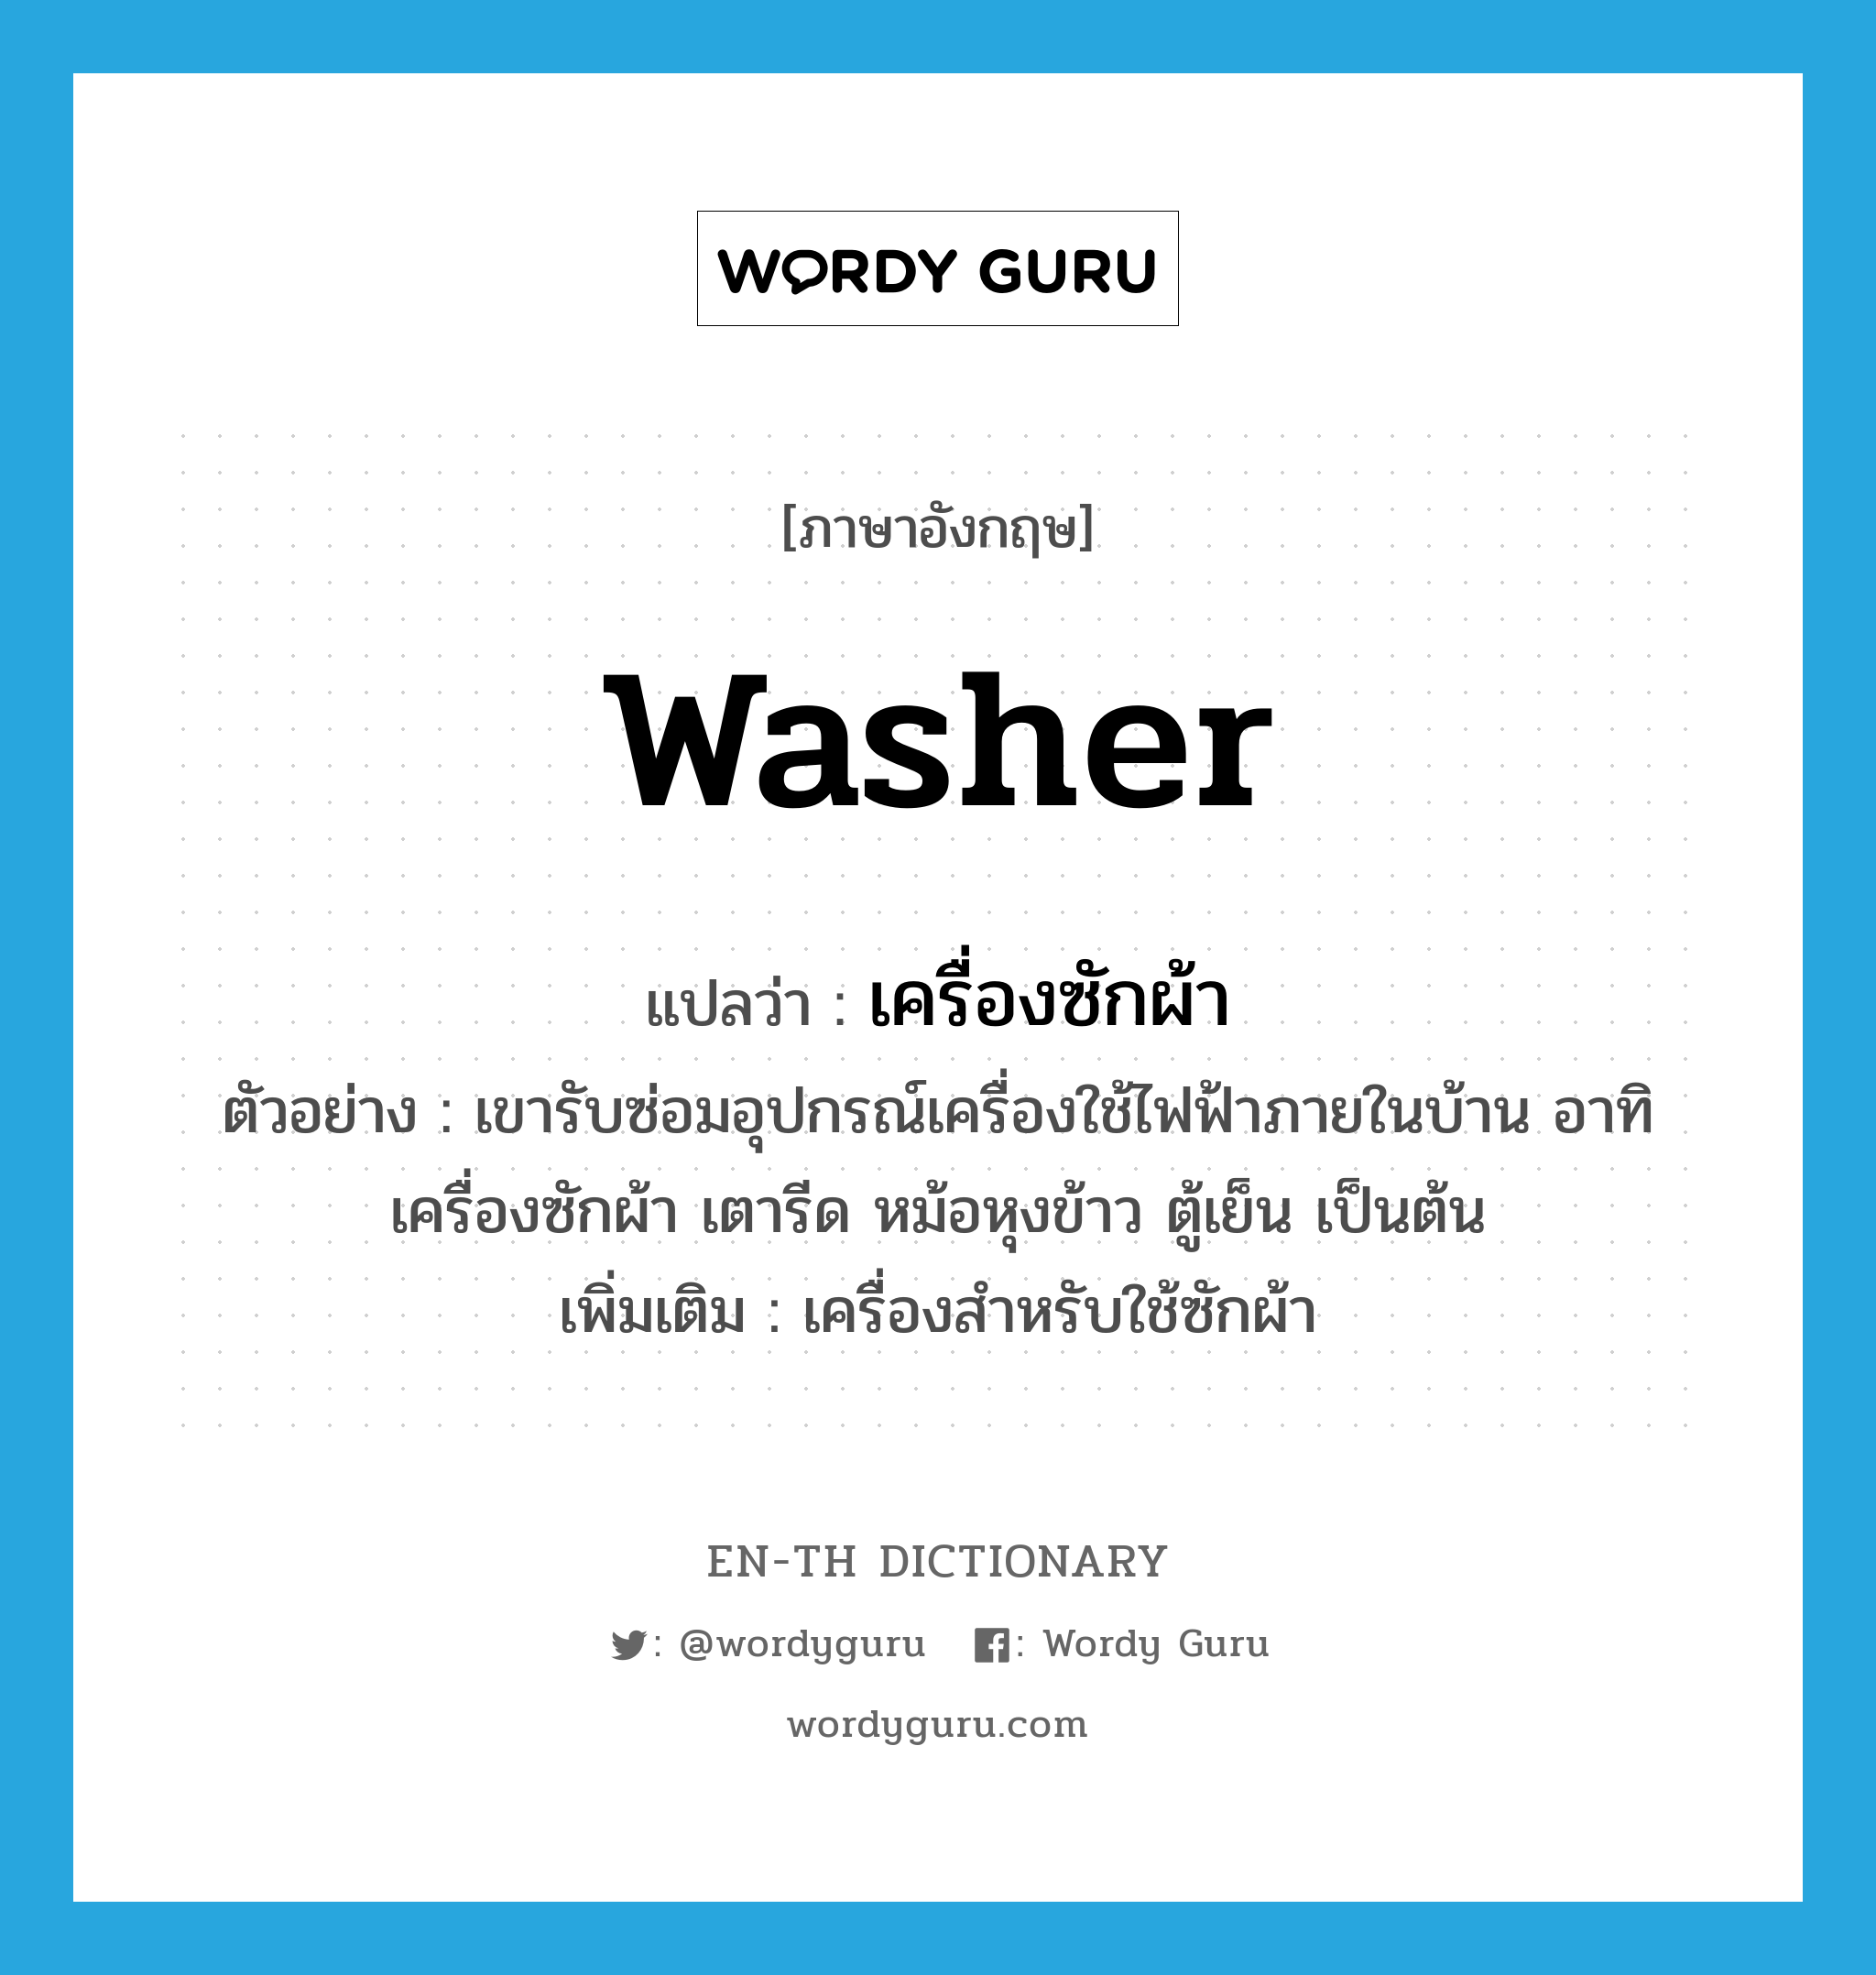 washer แปลว่า?, คำศัพท์ภาษาอังกฤษ washer แปลว่า เครื่องซักผ้า ประเภท N ตัวอย่าง เขารับซ่อมอุปกรณ์เครื่องใช้ไฟฟ้าภายในบ้าน อาทิ เครื่องซักผ้า เตารีด หม้อหุงข้าว ตู้เย็น เป็นต้น เพิ่มเติม เครื่องสำหรับใช้ซักผ้า หมวด N